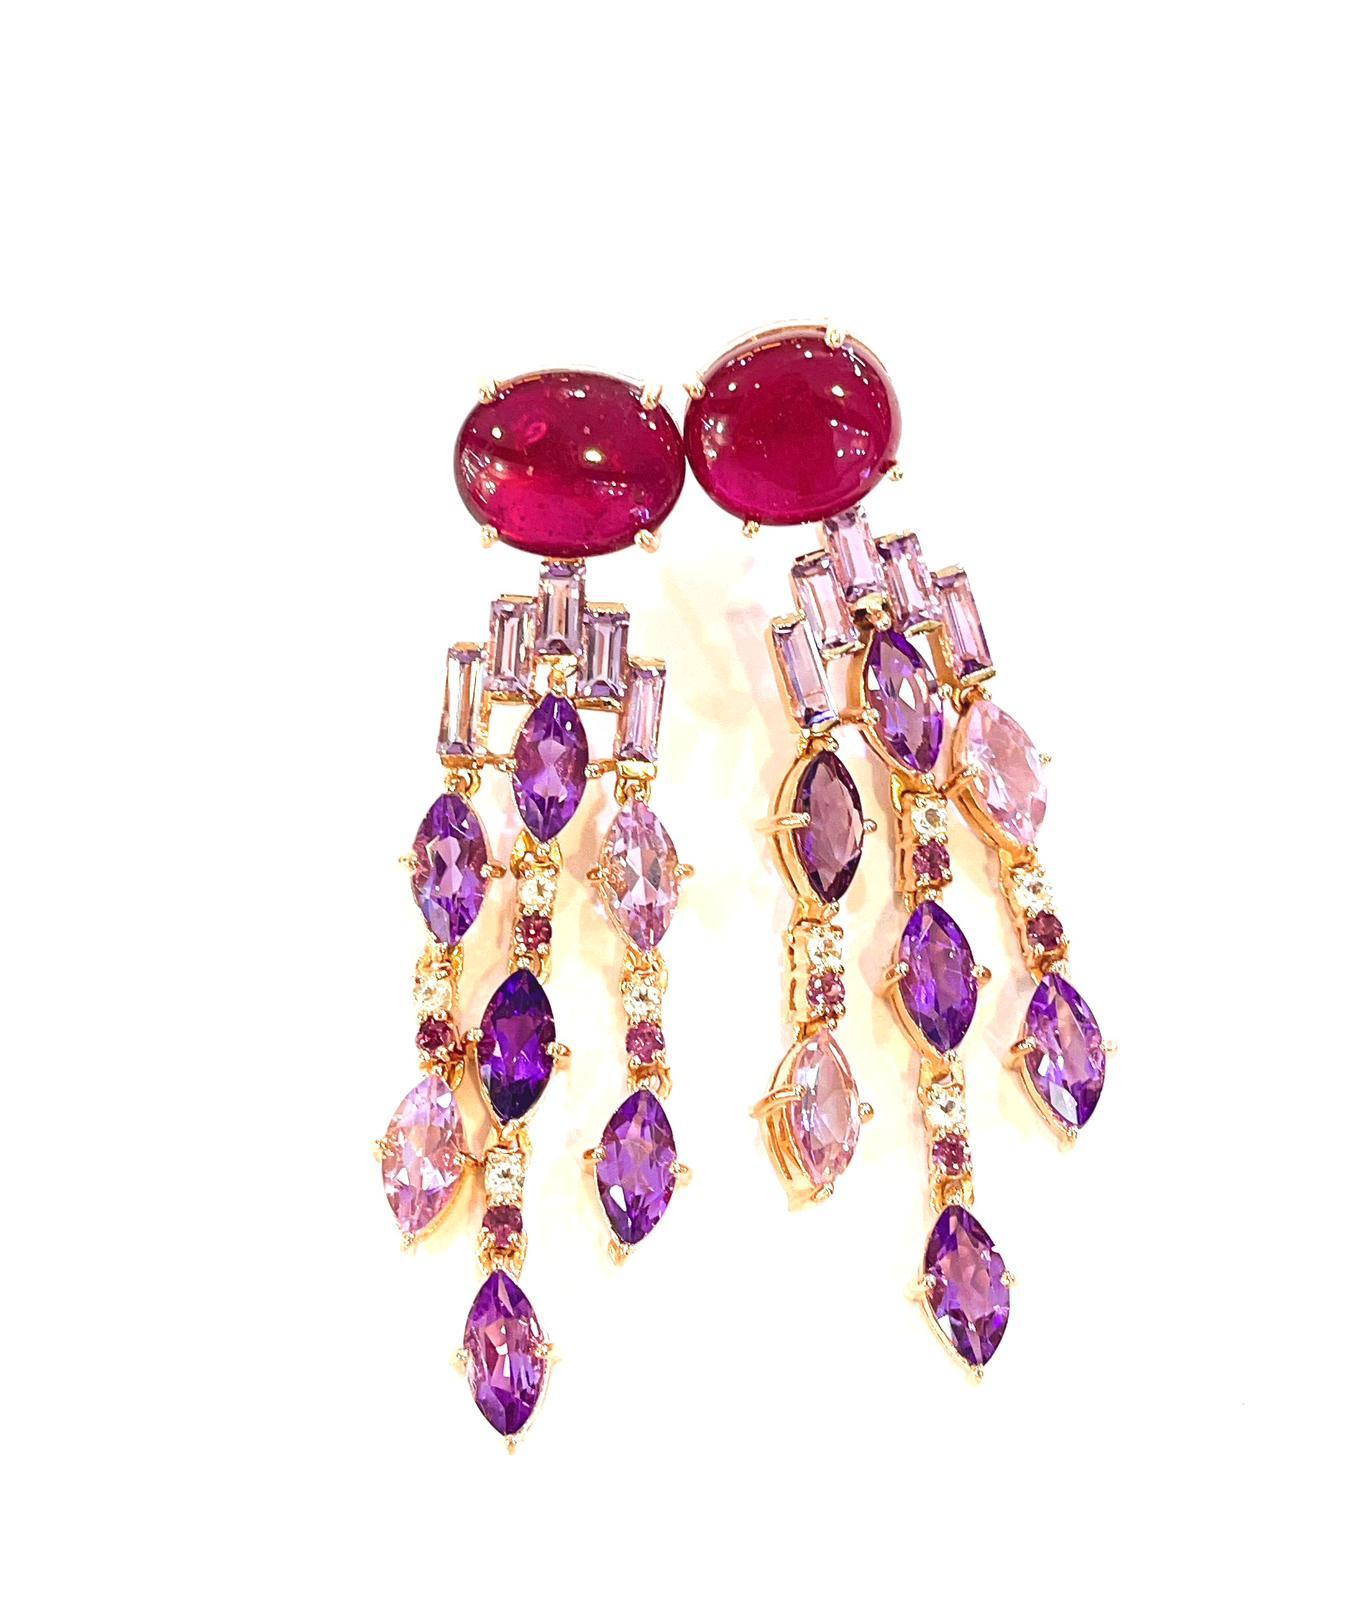 Cabochon Bochic “Capri” Red Ruby & Purple Amethyst Earrings Set in 22k Gold & Silver  For Sale